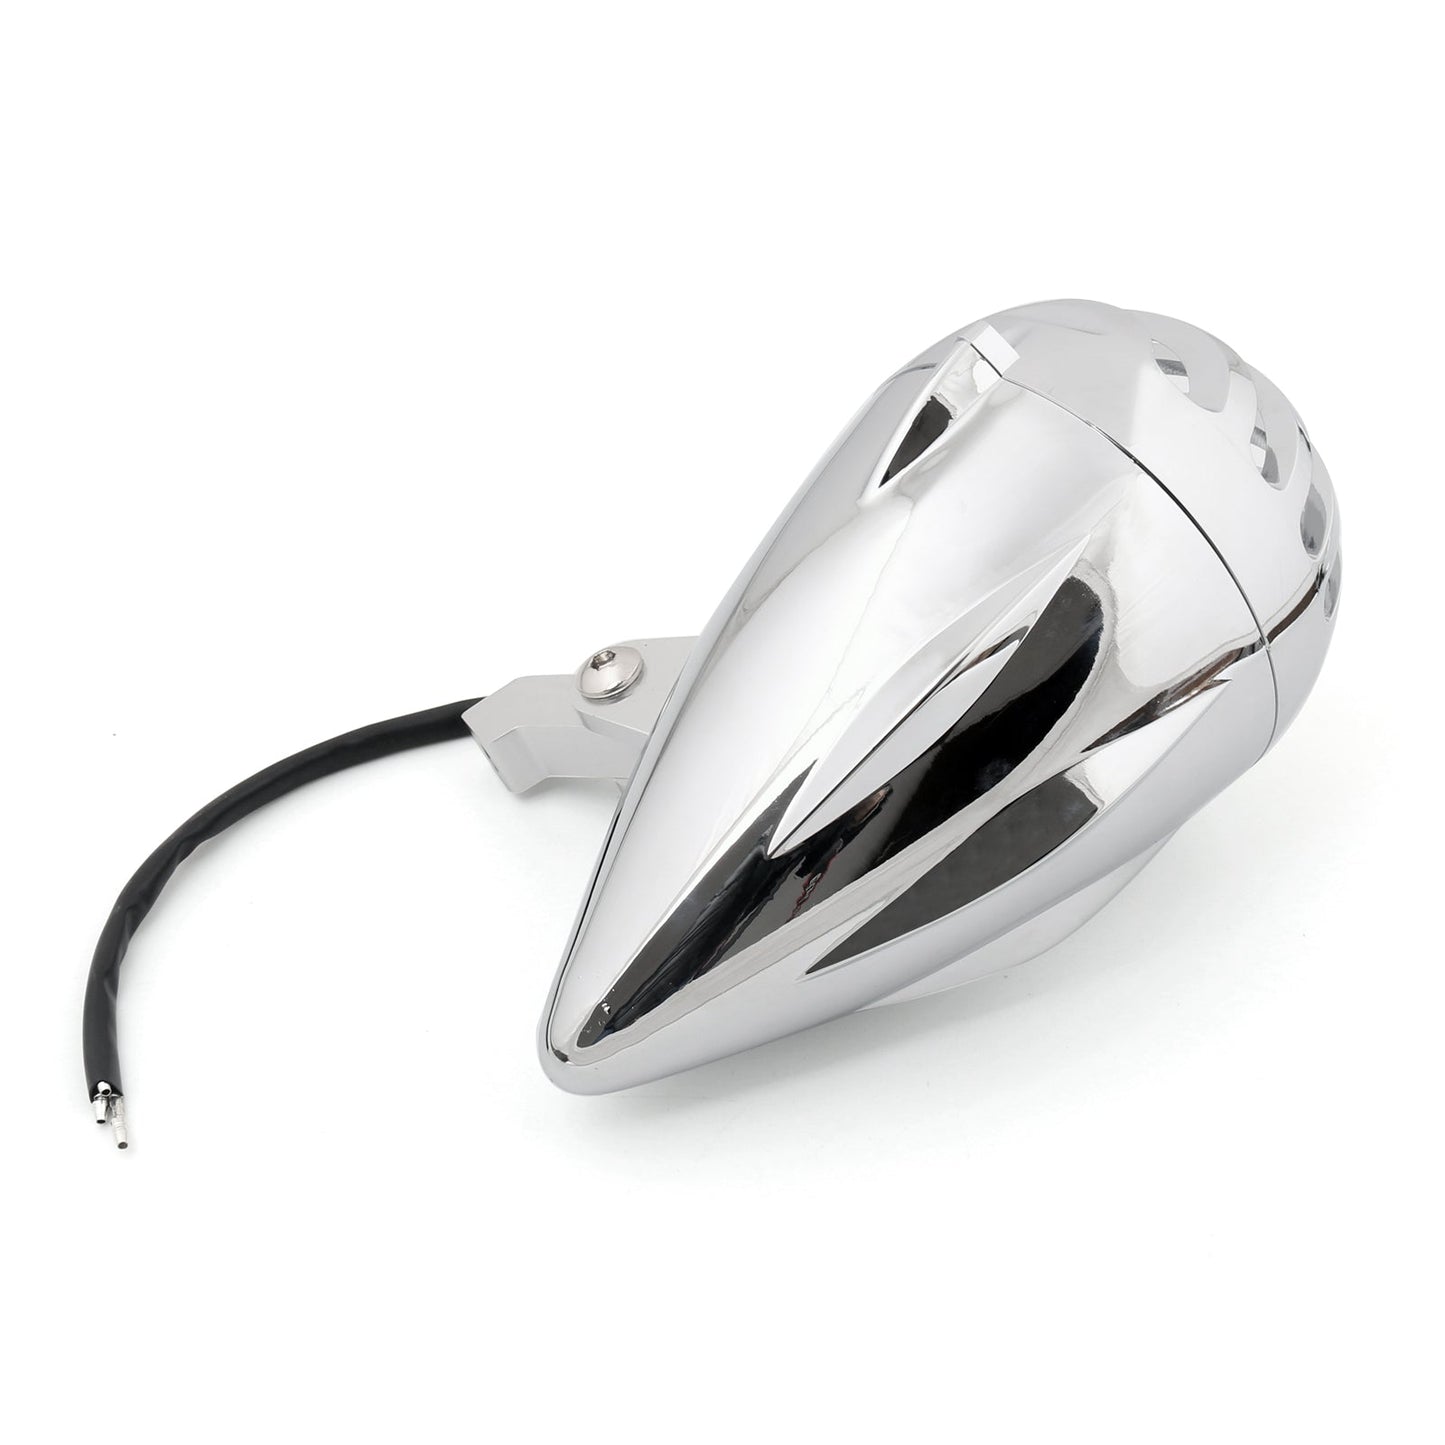 Motorcycle Chrome Bullet Headlight Lamp For Cafe Racer Bobber Chopper Custom